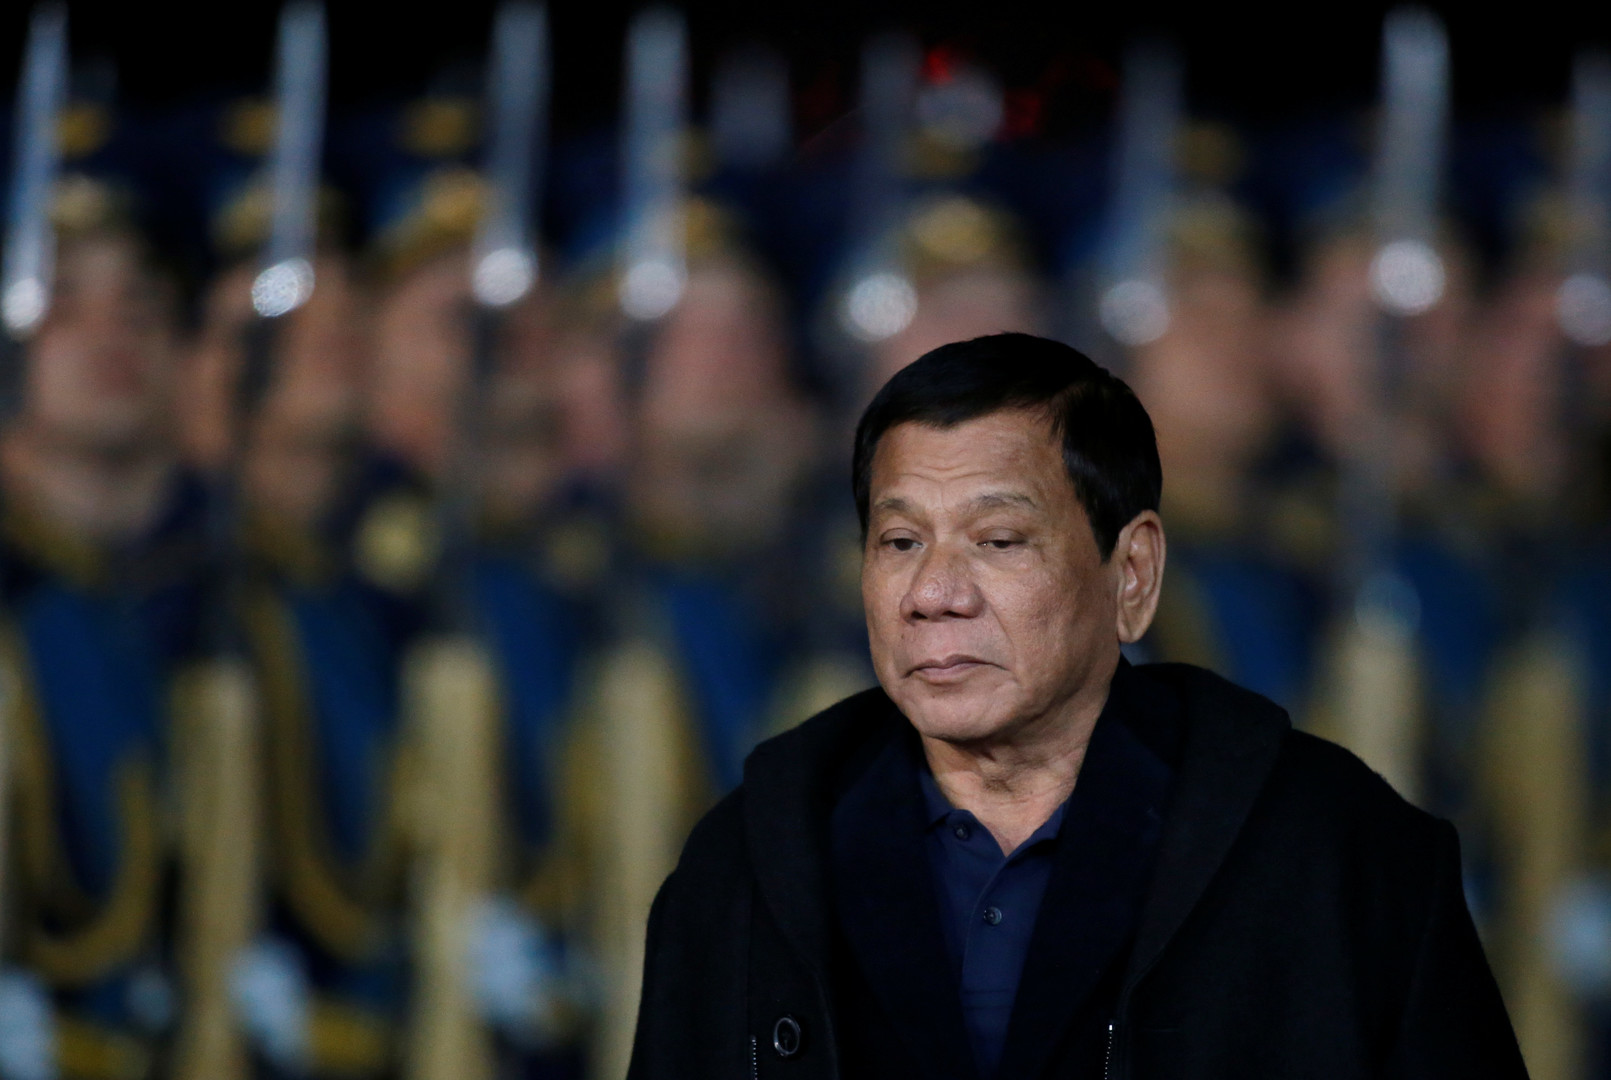   رئيس الفلبين يعرب عن تعاطفه مع ضحايا أحداث لندن